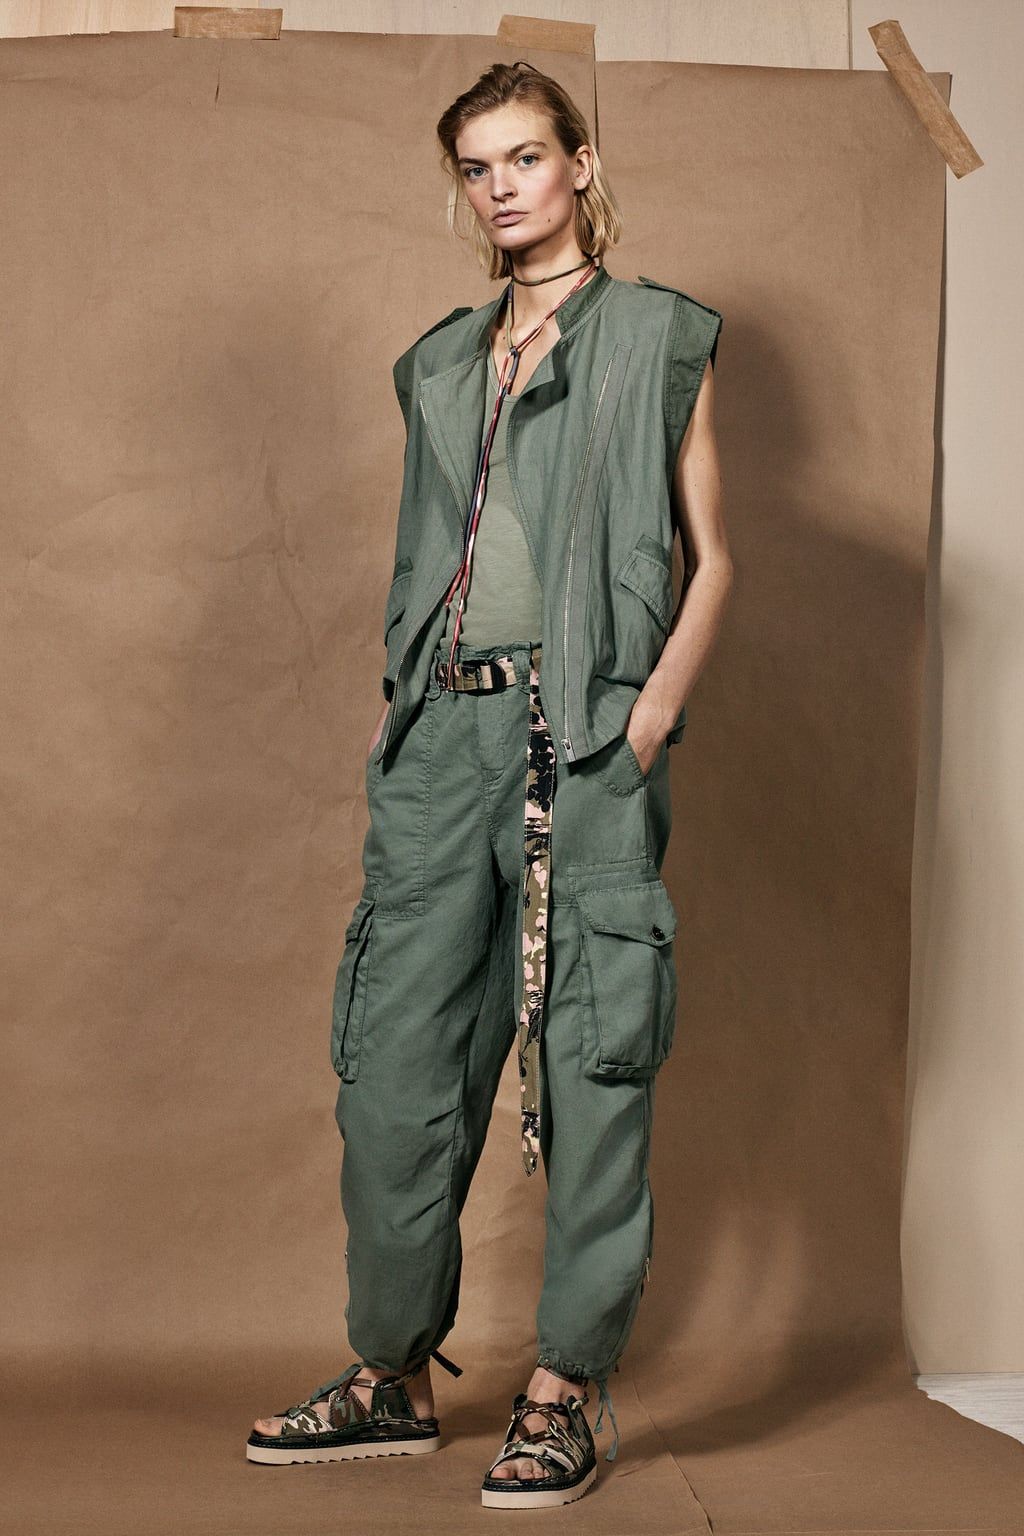 Lo nuevo de Zara SRPLS va a hacer que quieras vestir la tendencia militar todo el verano - Zara SPRLS convierte la tendencia militar en el 'must' del verano